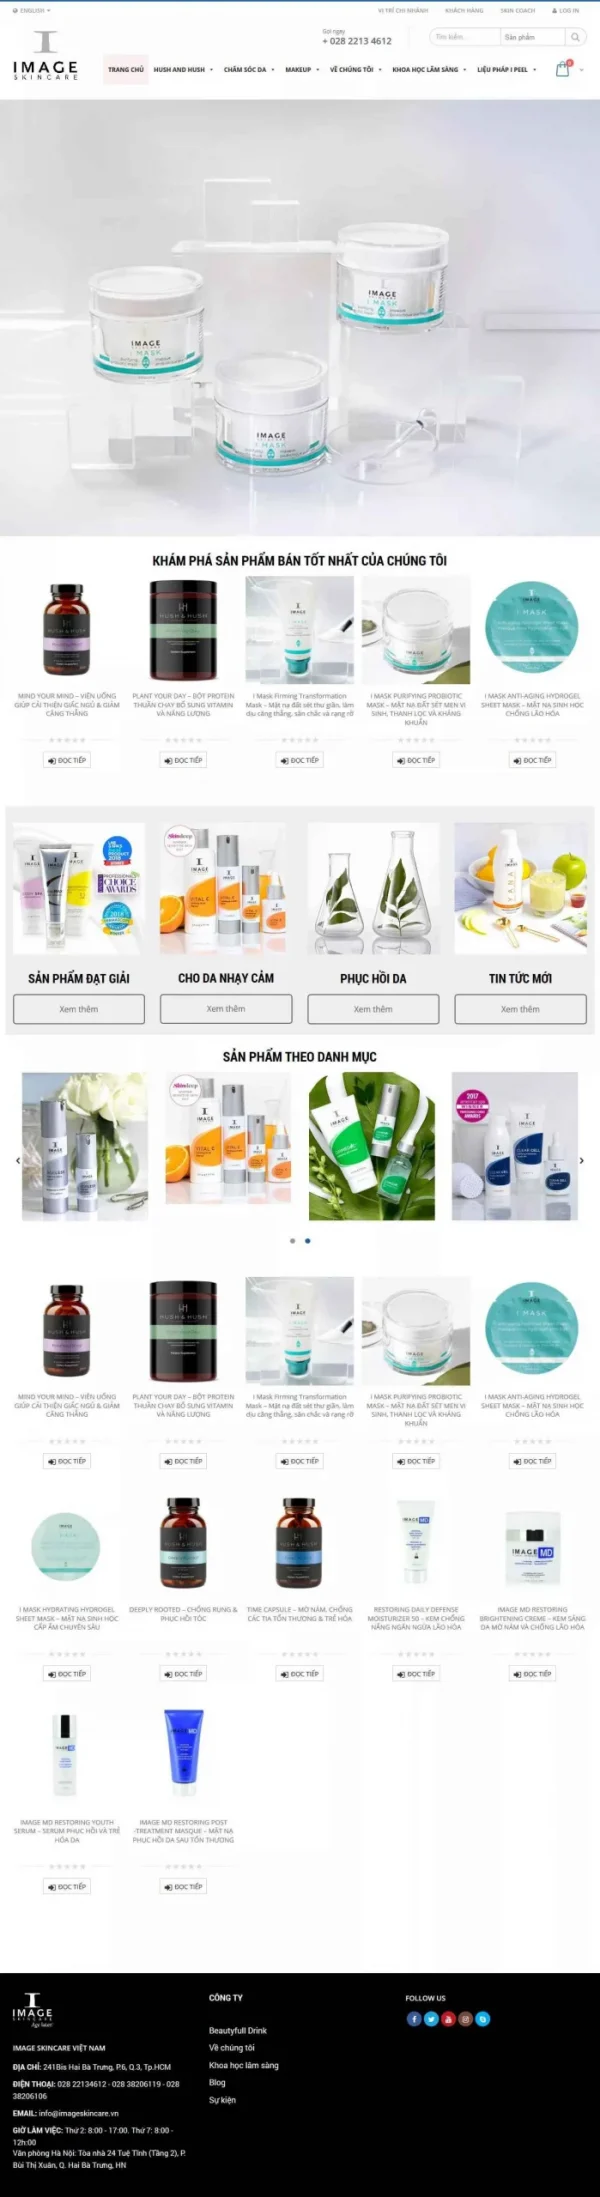 Mẫu giao diện website mỹ phẩm Image Skincare